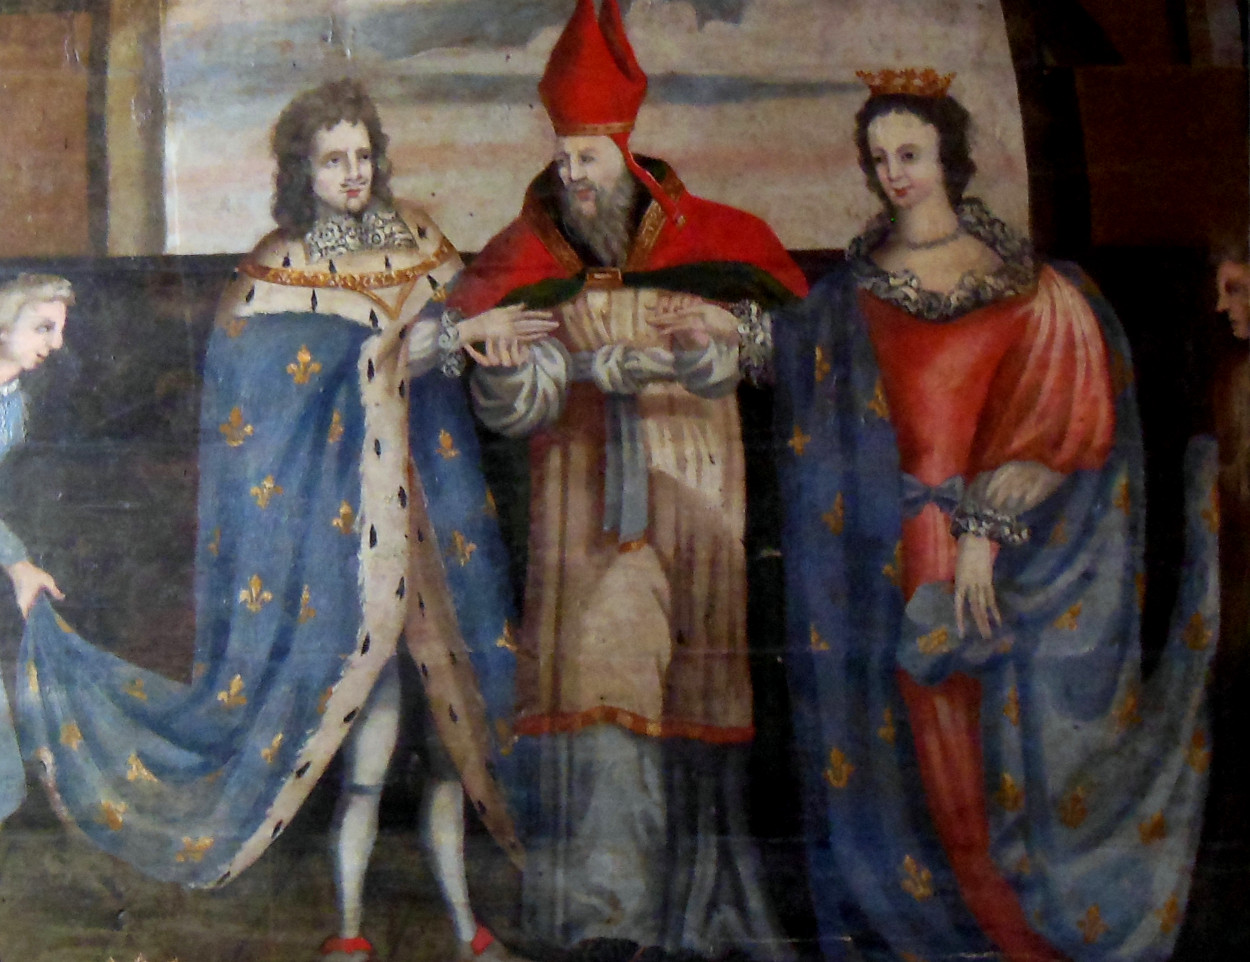 Eured Yann IV gant Janed Navarra en iliz Sant-Kler Salieg (Liger-Atlantel). Wikicommons.